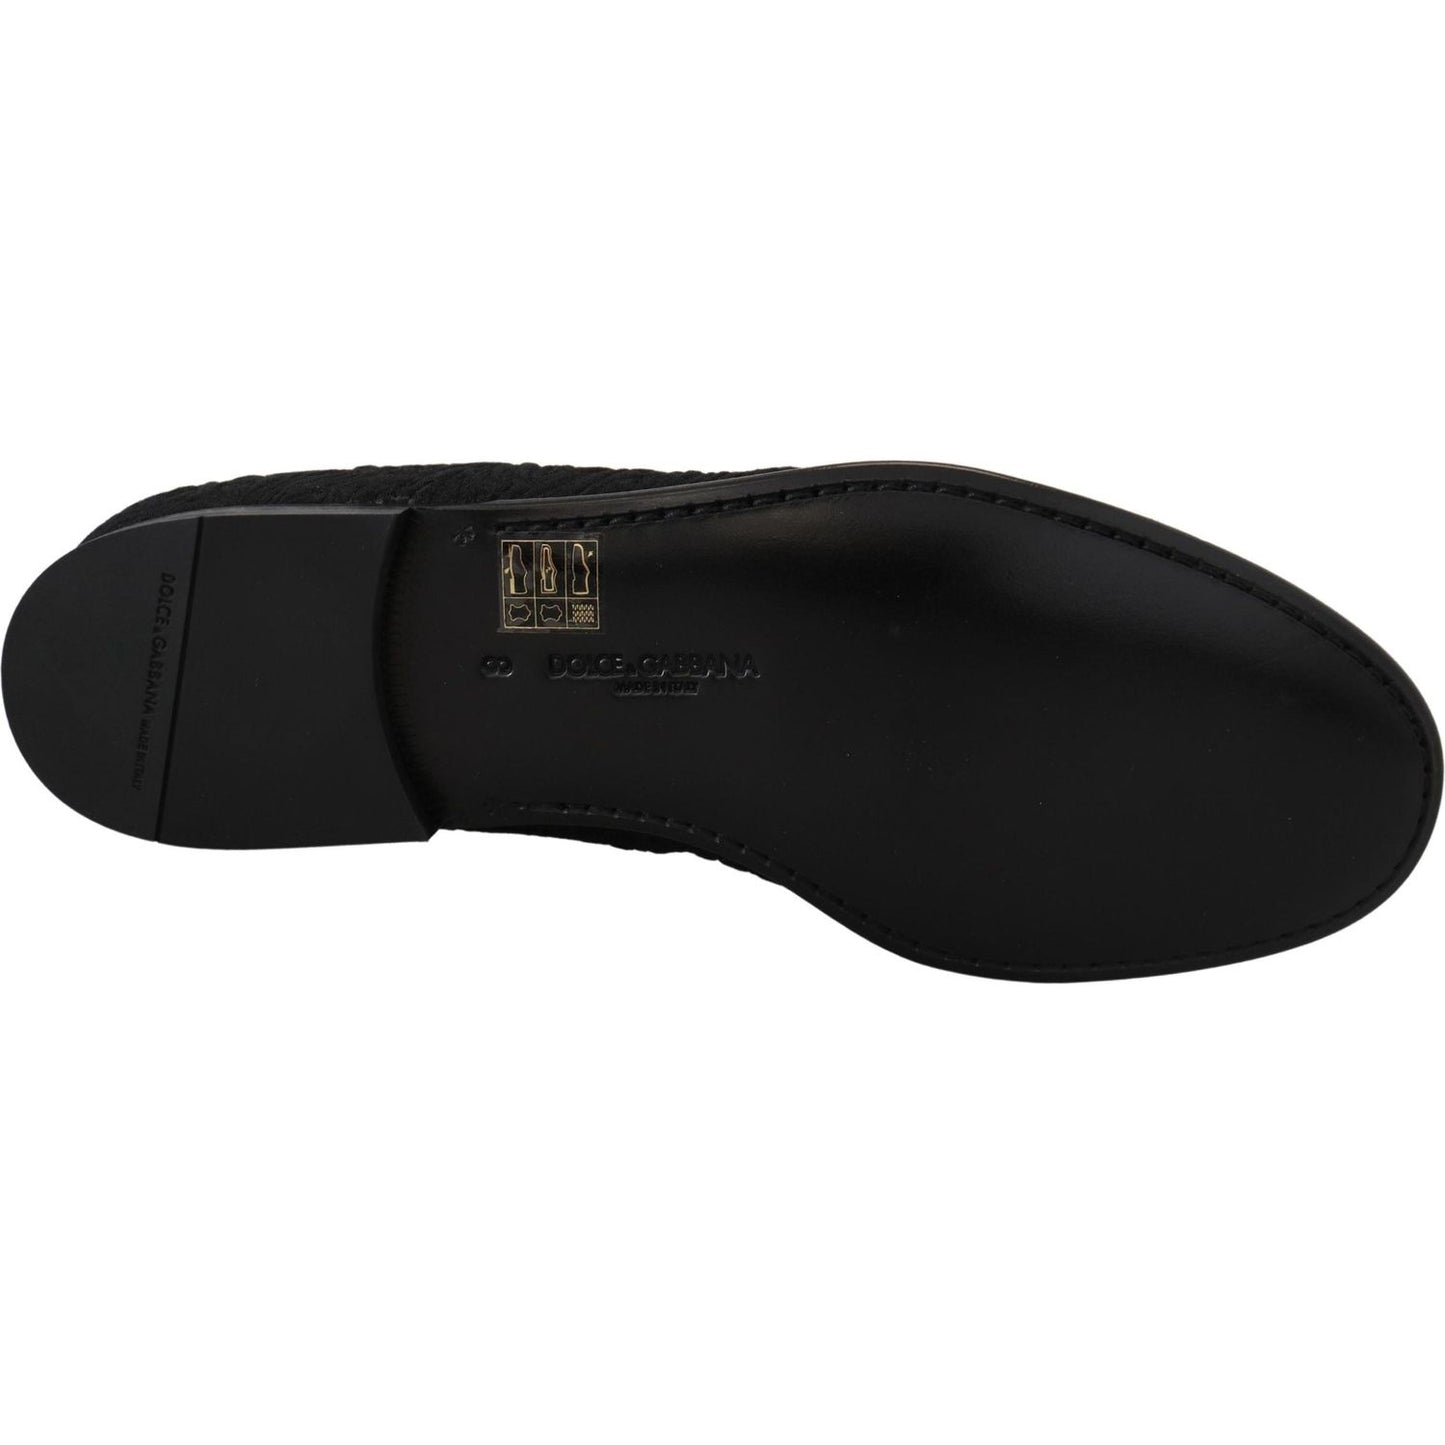 Dolce & Gabbana Elegant Jacquard Black Loafers Slide On Flats black-floral-jacquard-slippers-loafers-shoes